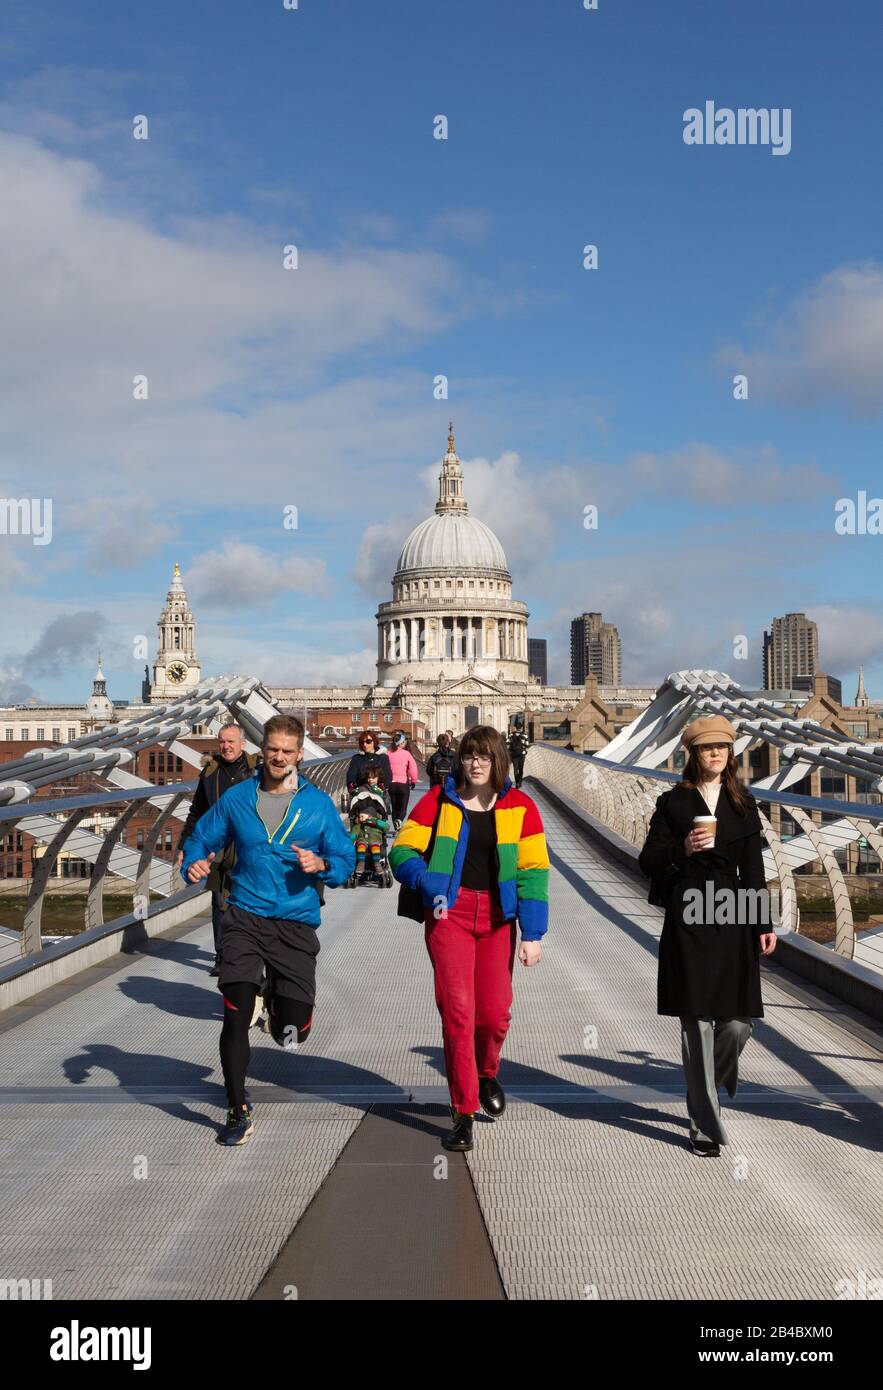 Les gens traversant le pont du Millénaire en face de la cathédrale St Pauls une journée ensoleillée en mars, centre-ville de Londres, Londres Angleterre Royaume-Uni Banque D'Images